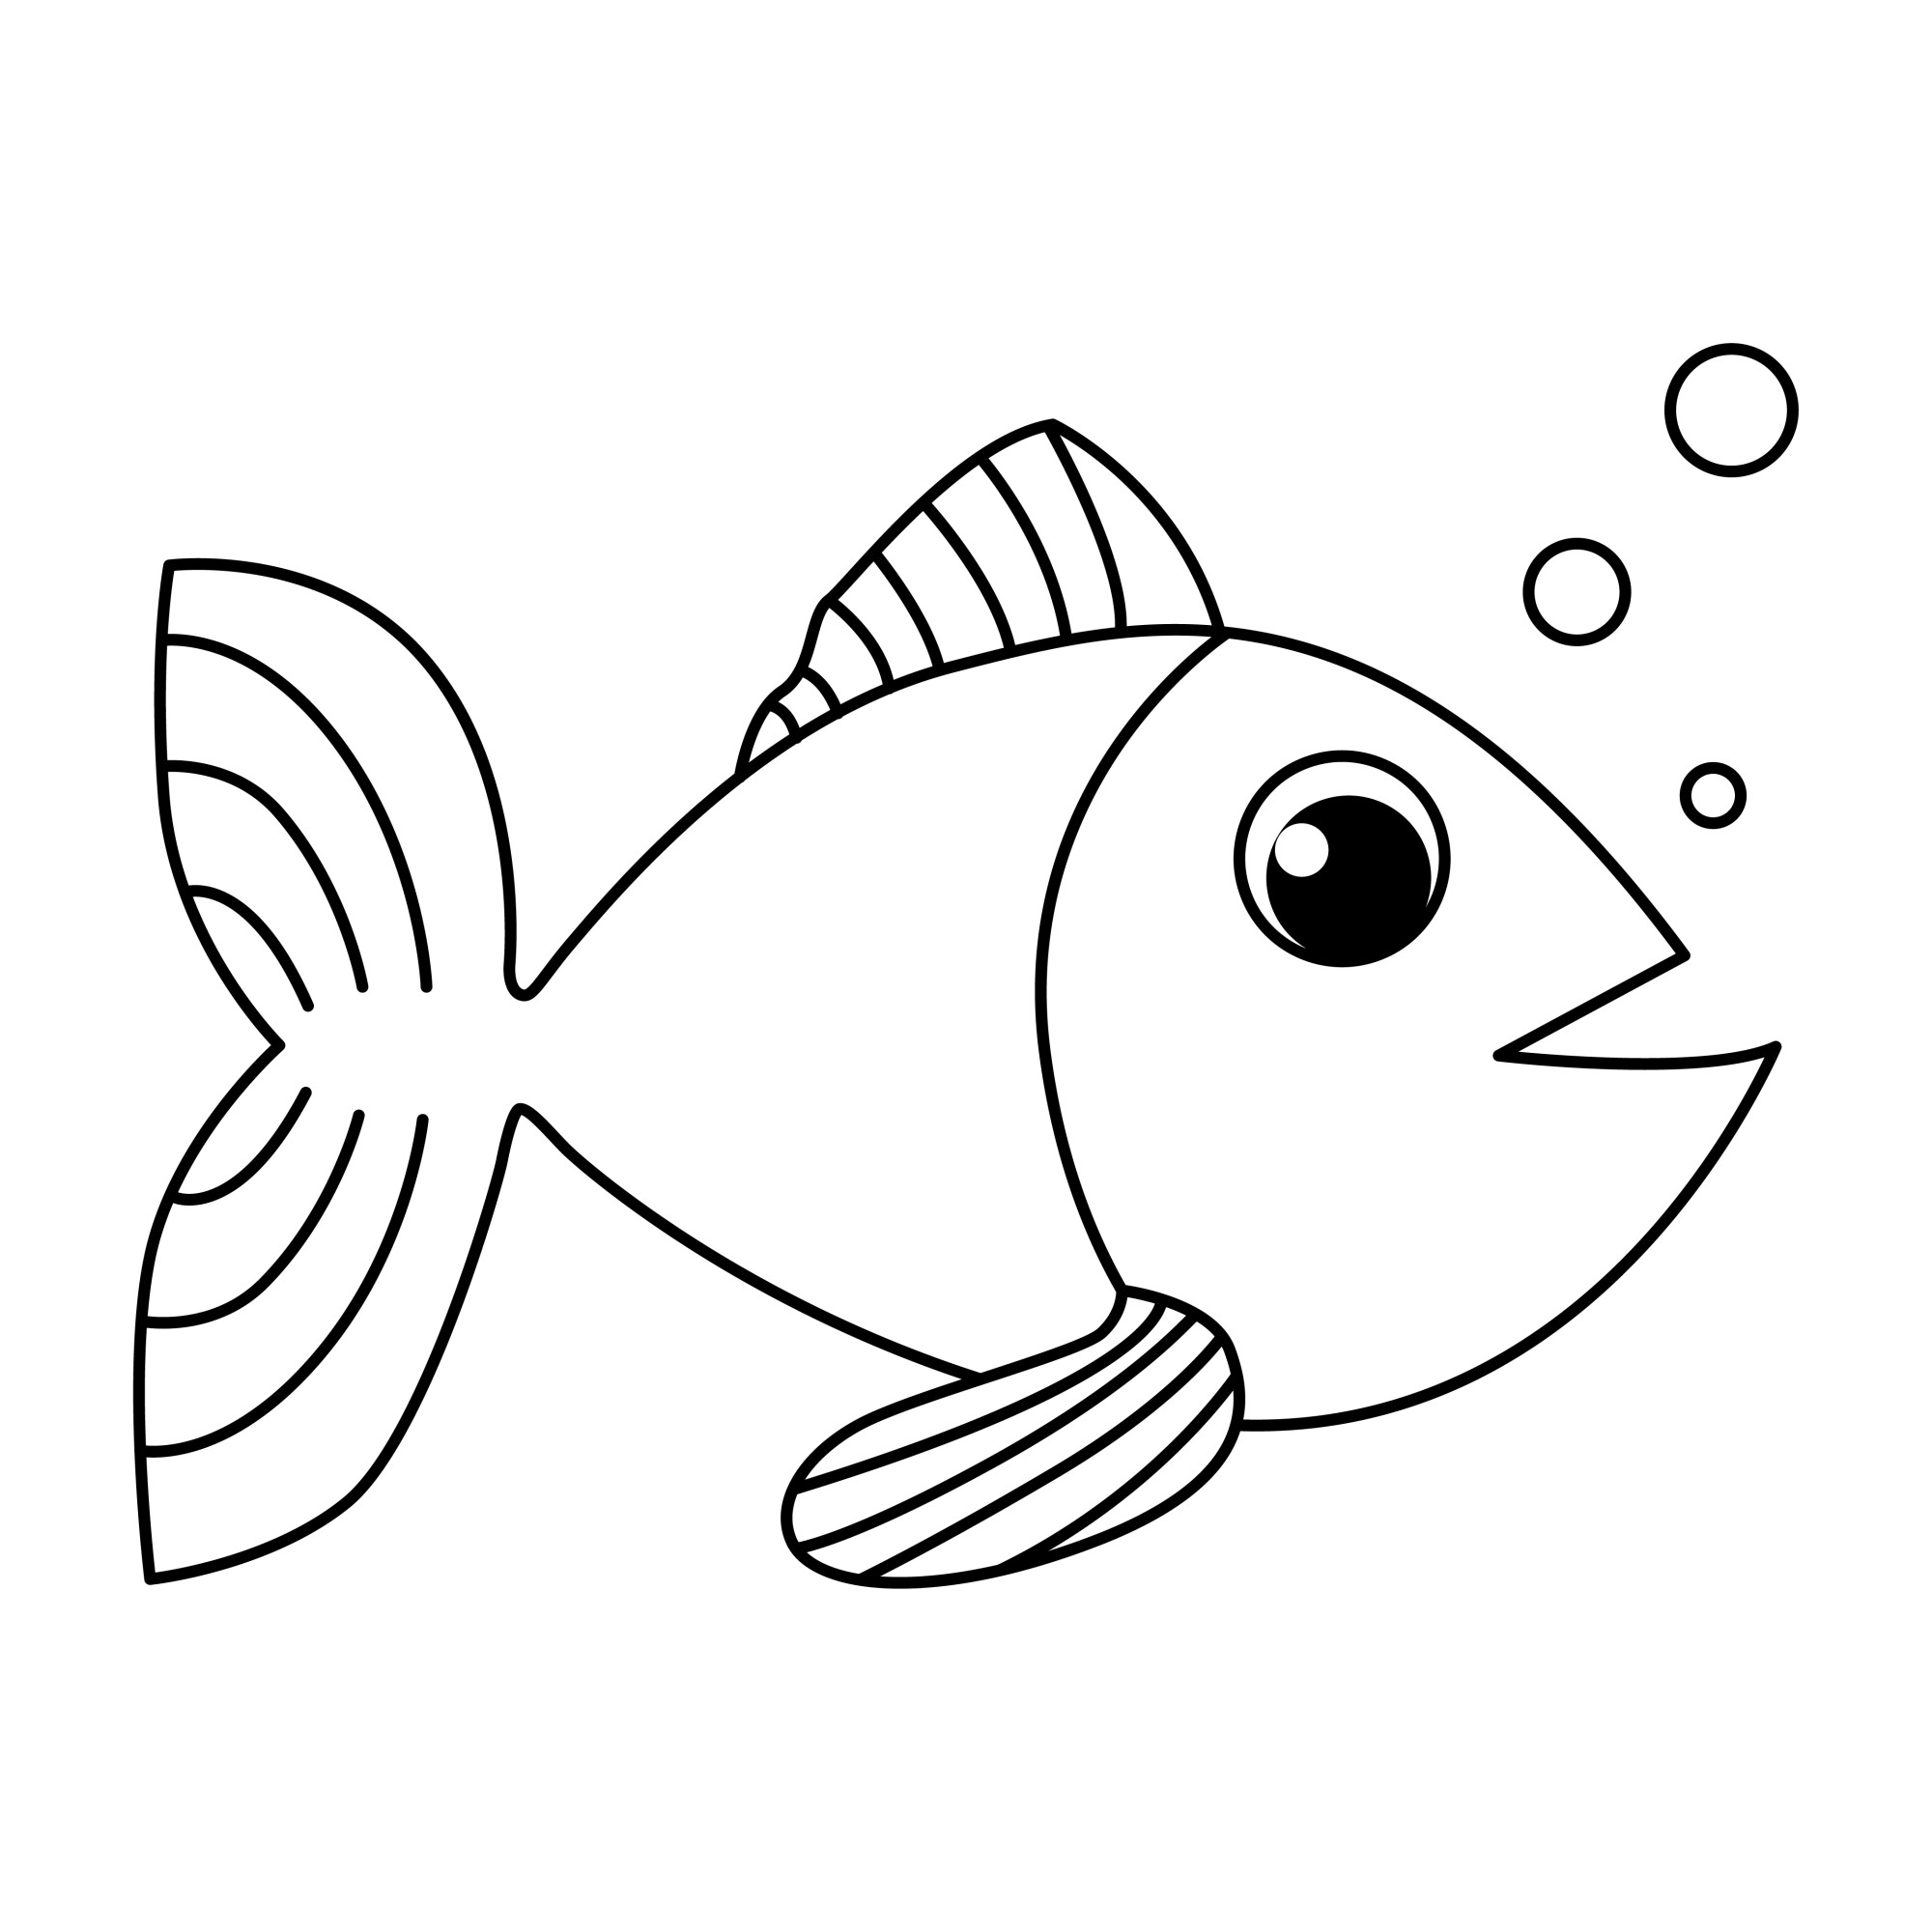 Раскраска для детей: рыбка с воздушными пузырьками в воде